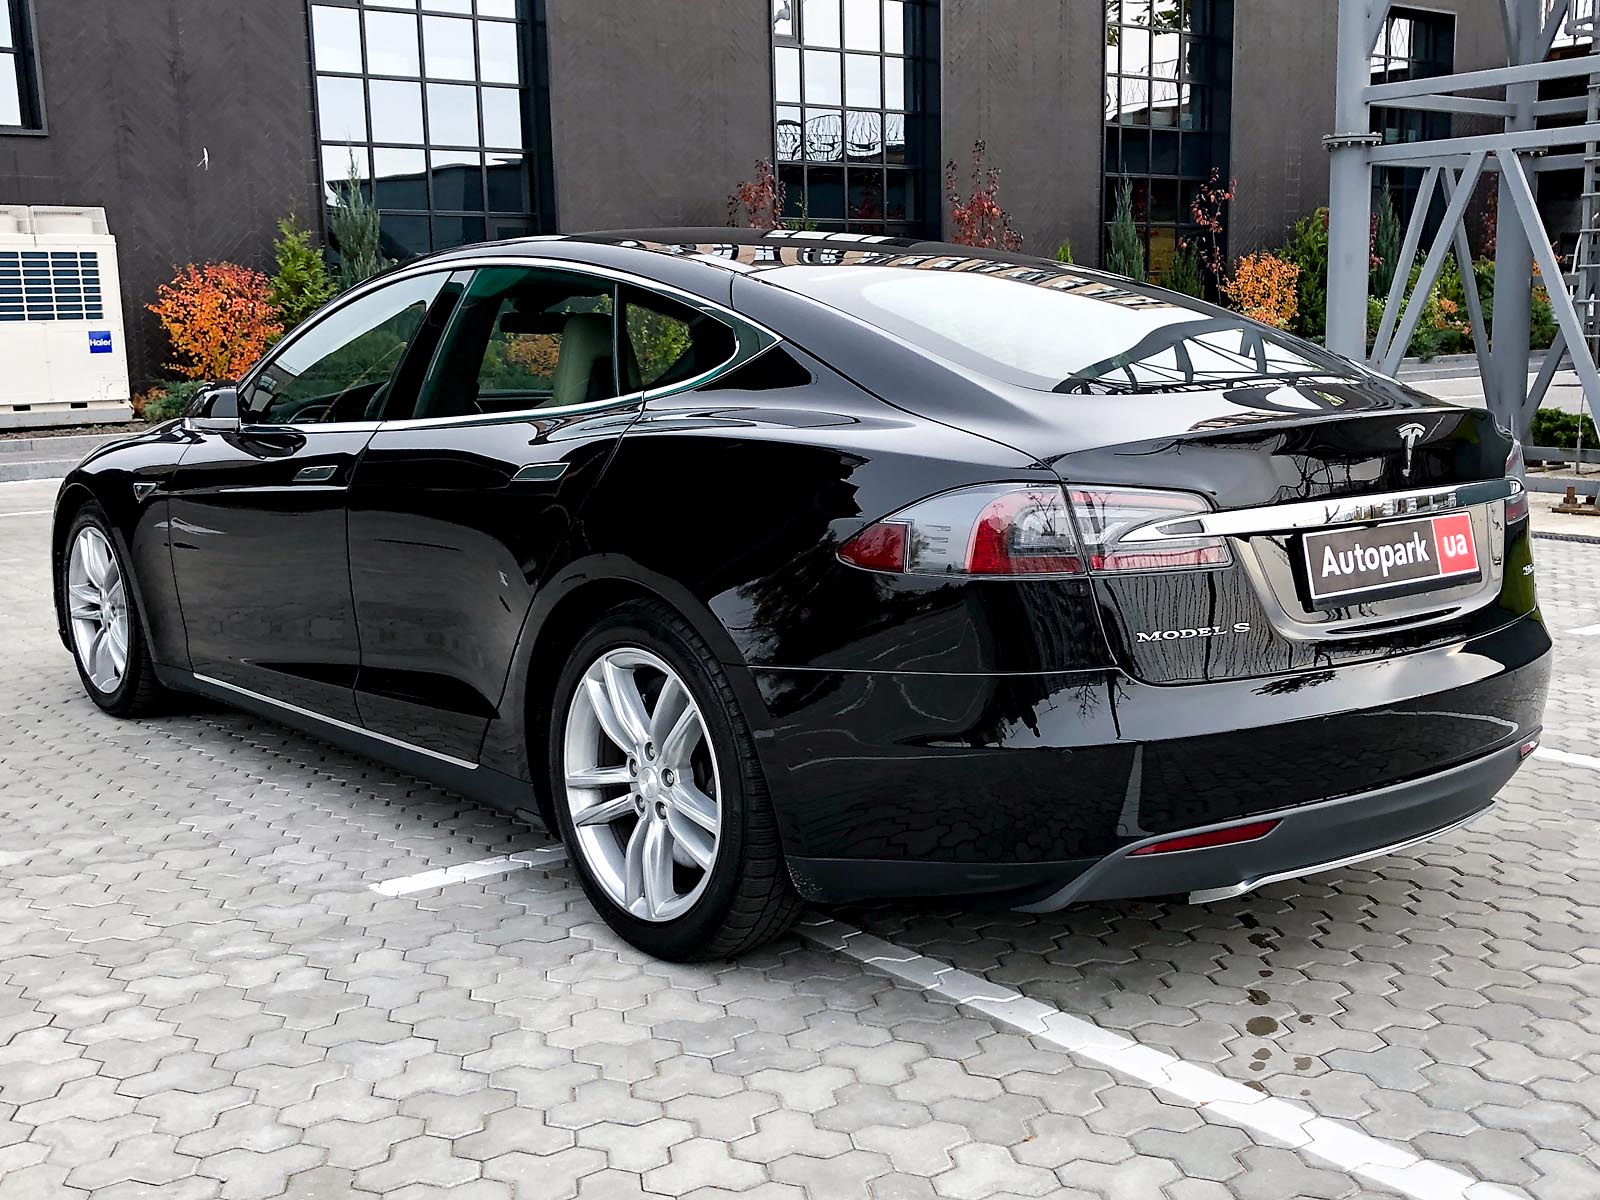 Tesla Model S - Фото 5